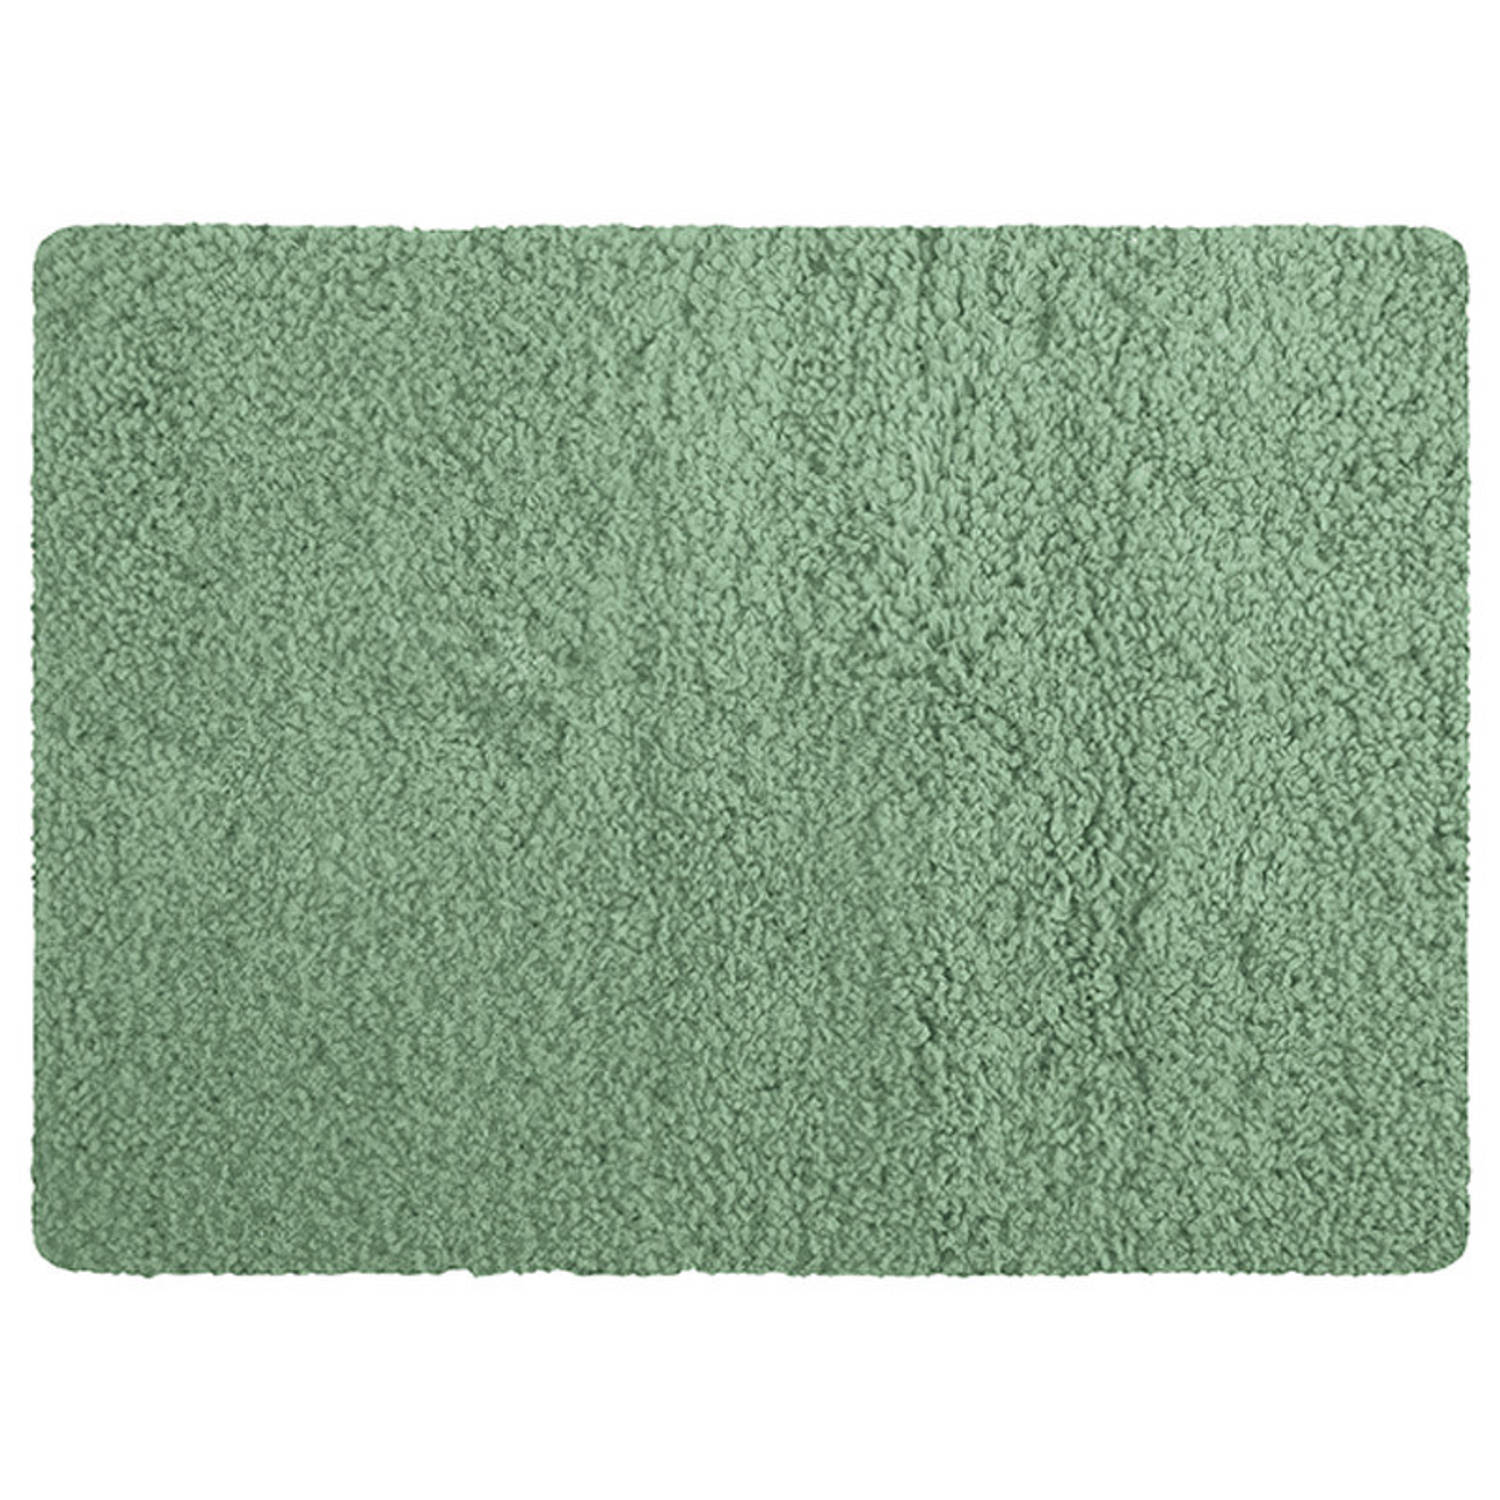 MSV Badkamerkleedje/badmat tapijt - voor de vloer - groen - 50 x 70 cm - Microfibre - langharig